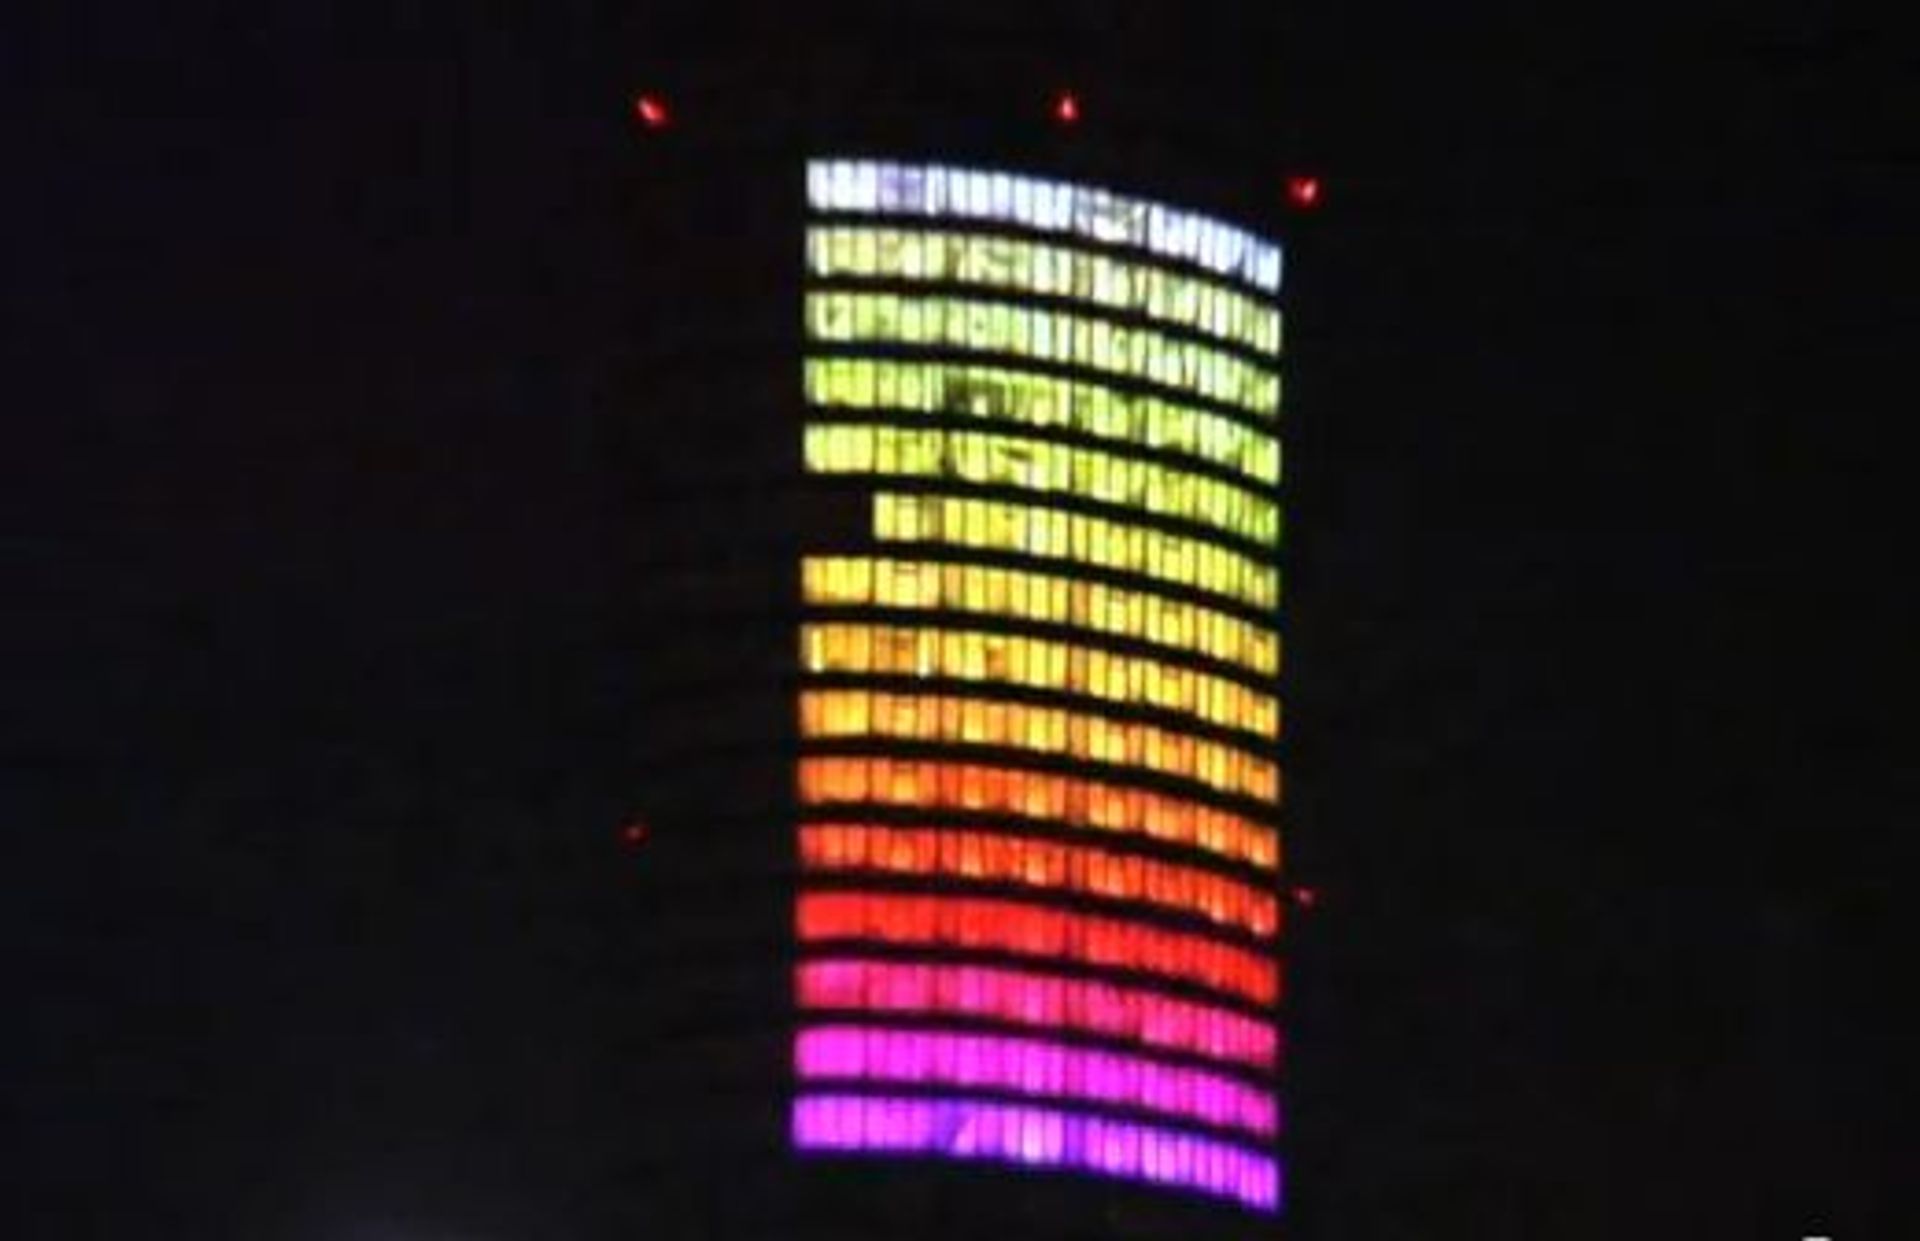  W sobotę Sky Tower zamieni się w wielki kolorowy wyświetlacz